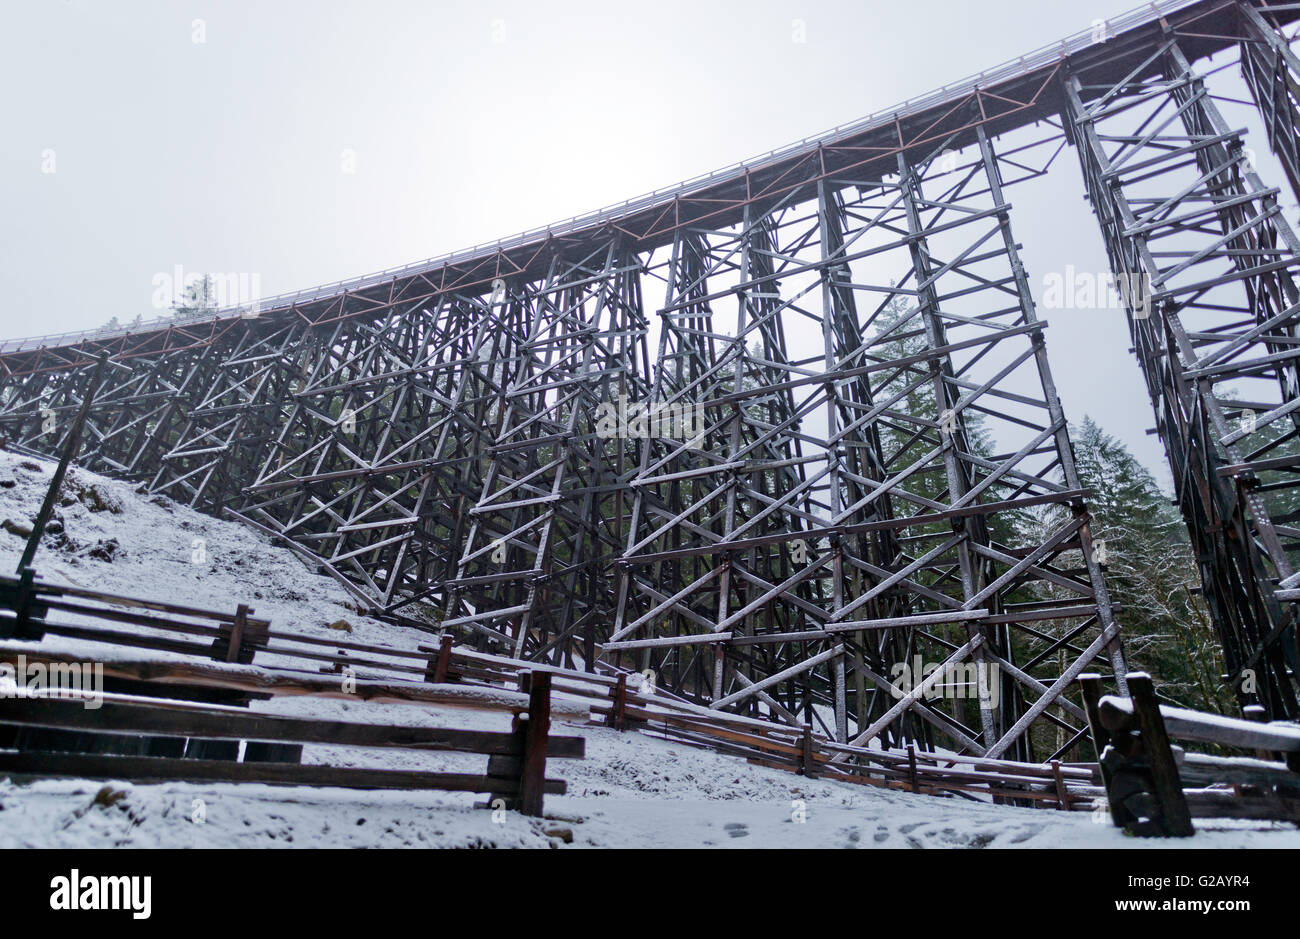 Le pont sur chevalets Kinsol en neige à l'île de Vancouver,Canada Banque D'Images